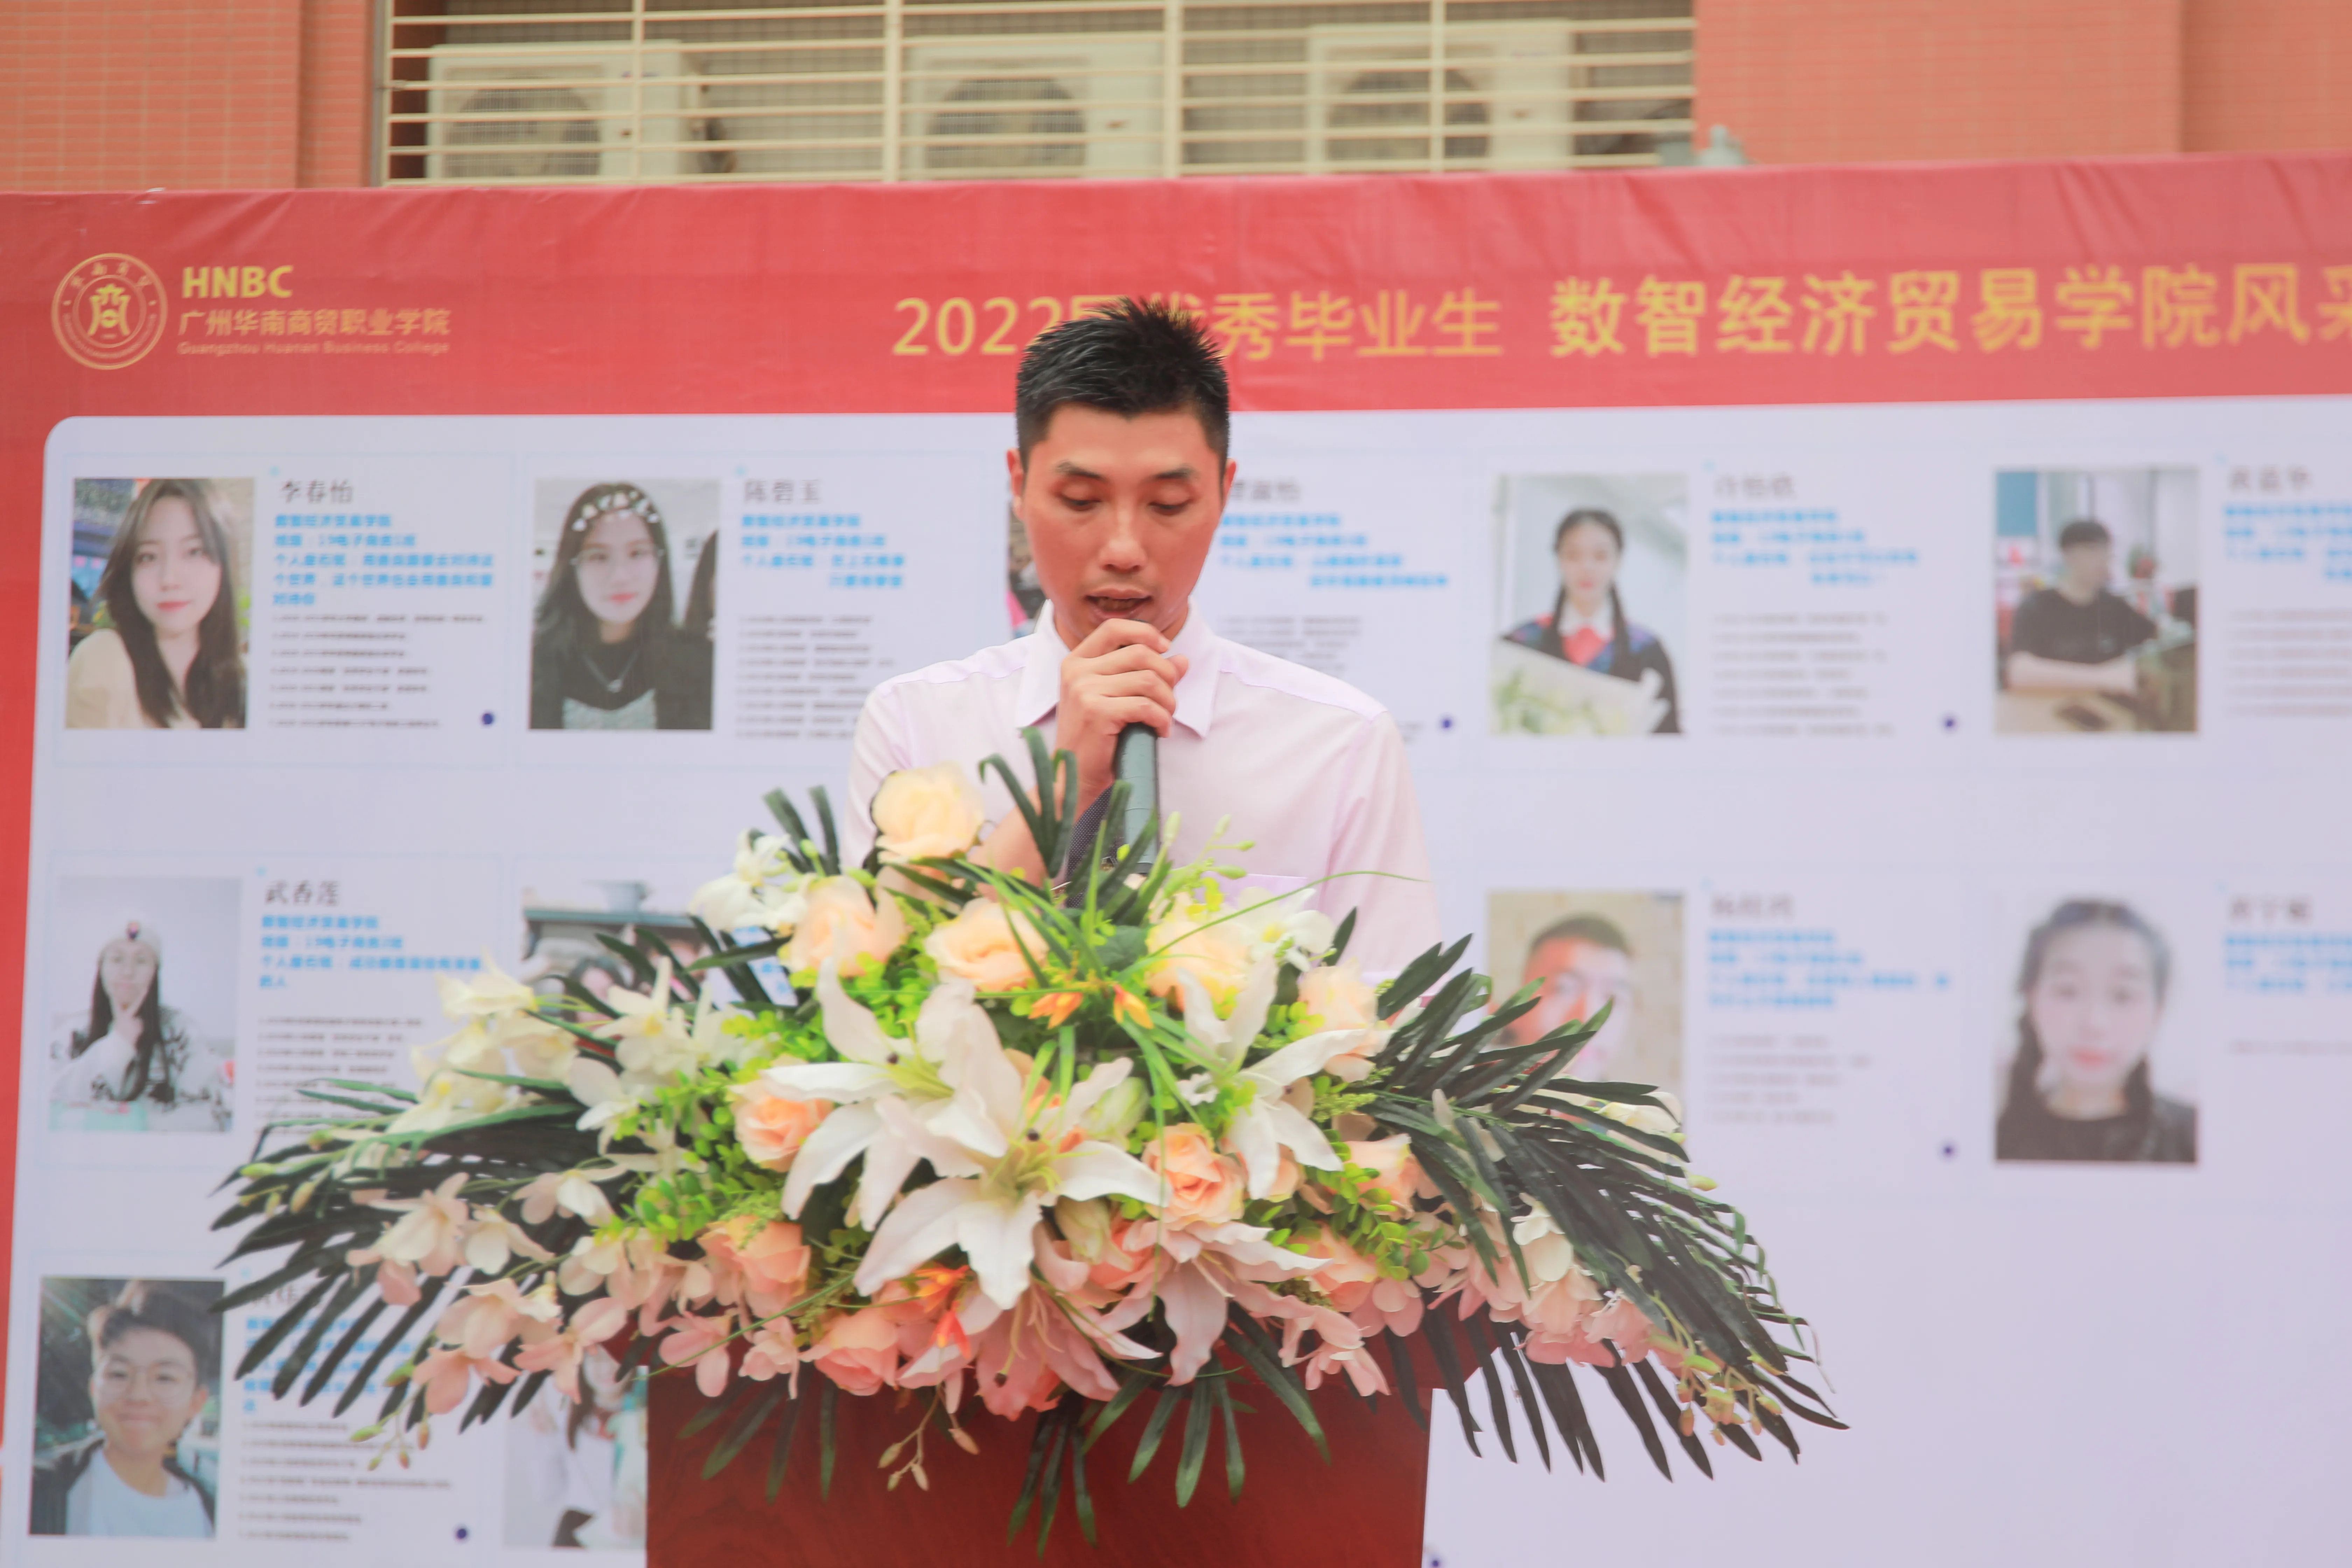 广州华南商贸职业学院举行2022届学生毕业典礼